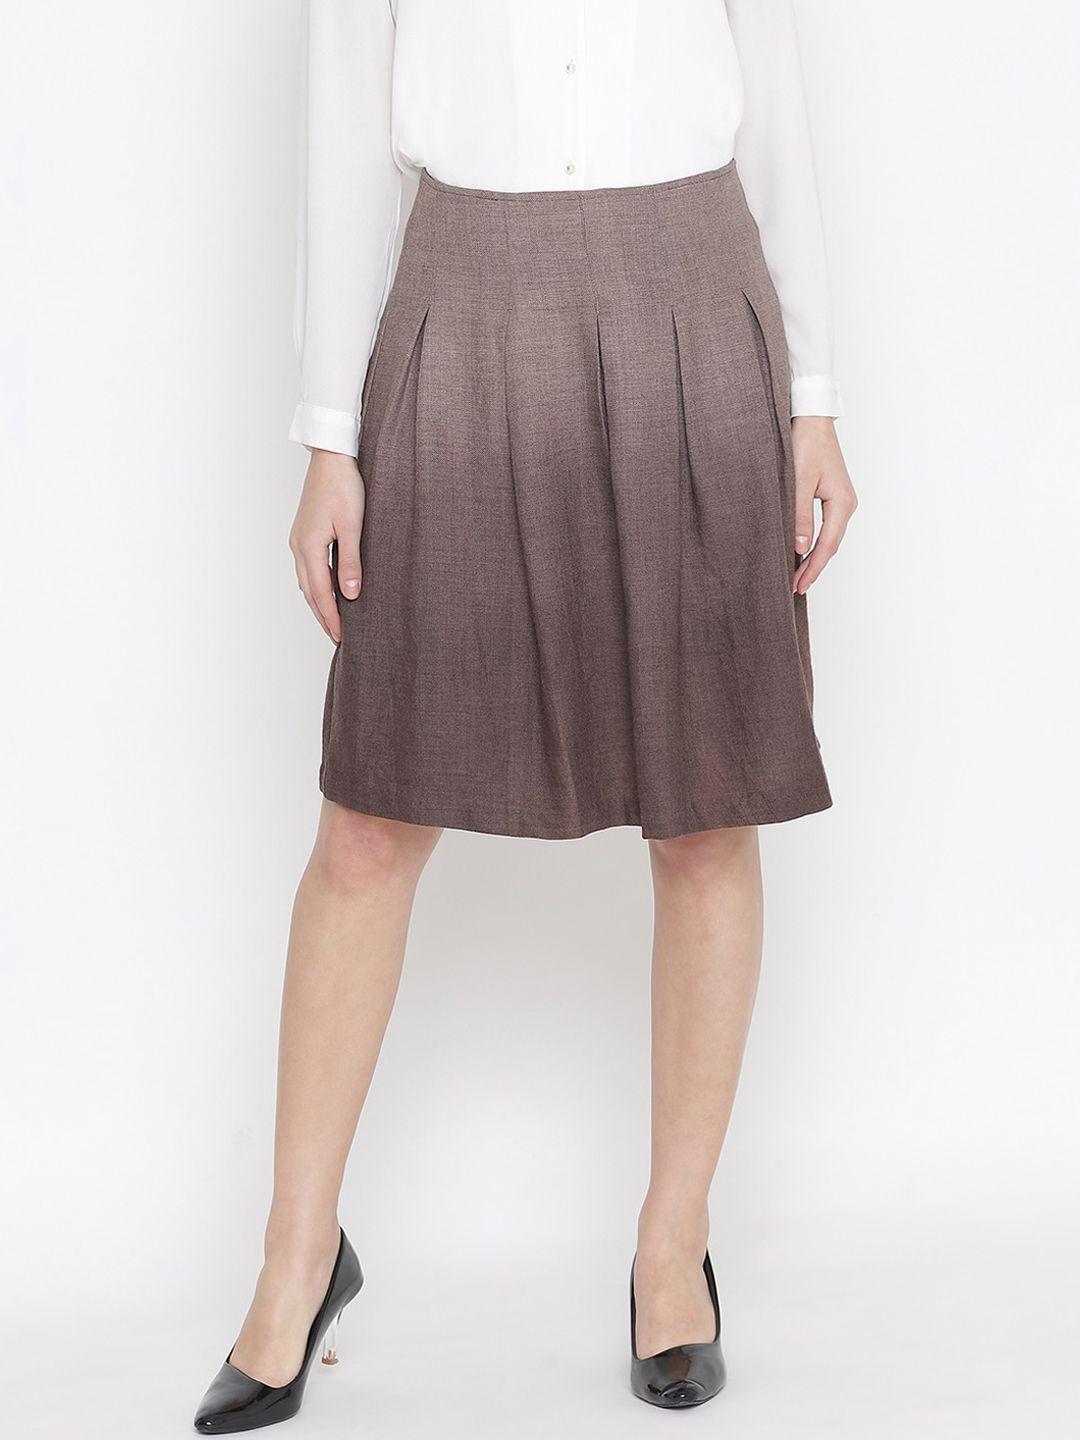 oxolloxo woman brown woolen skirt